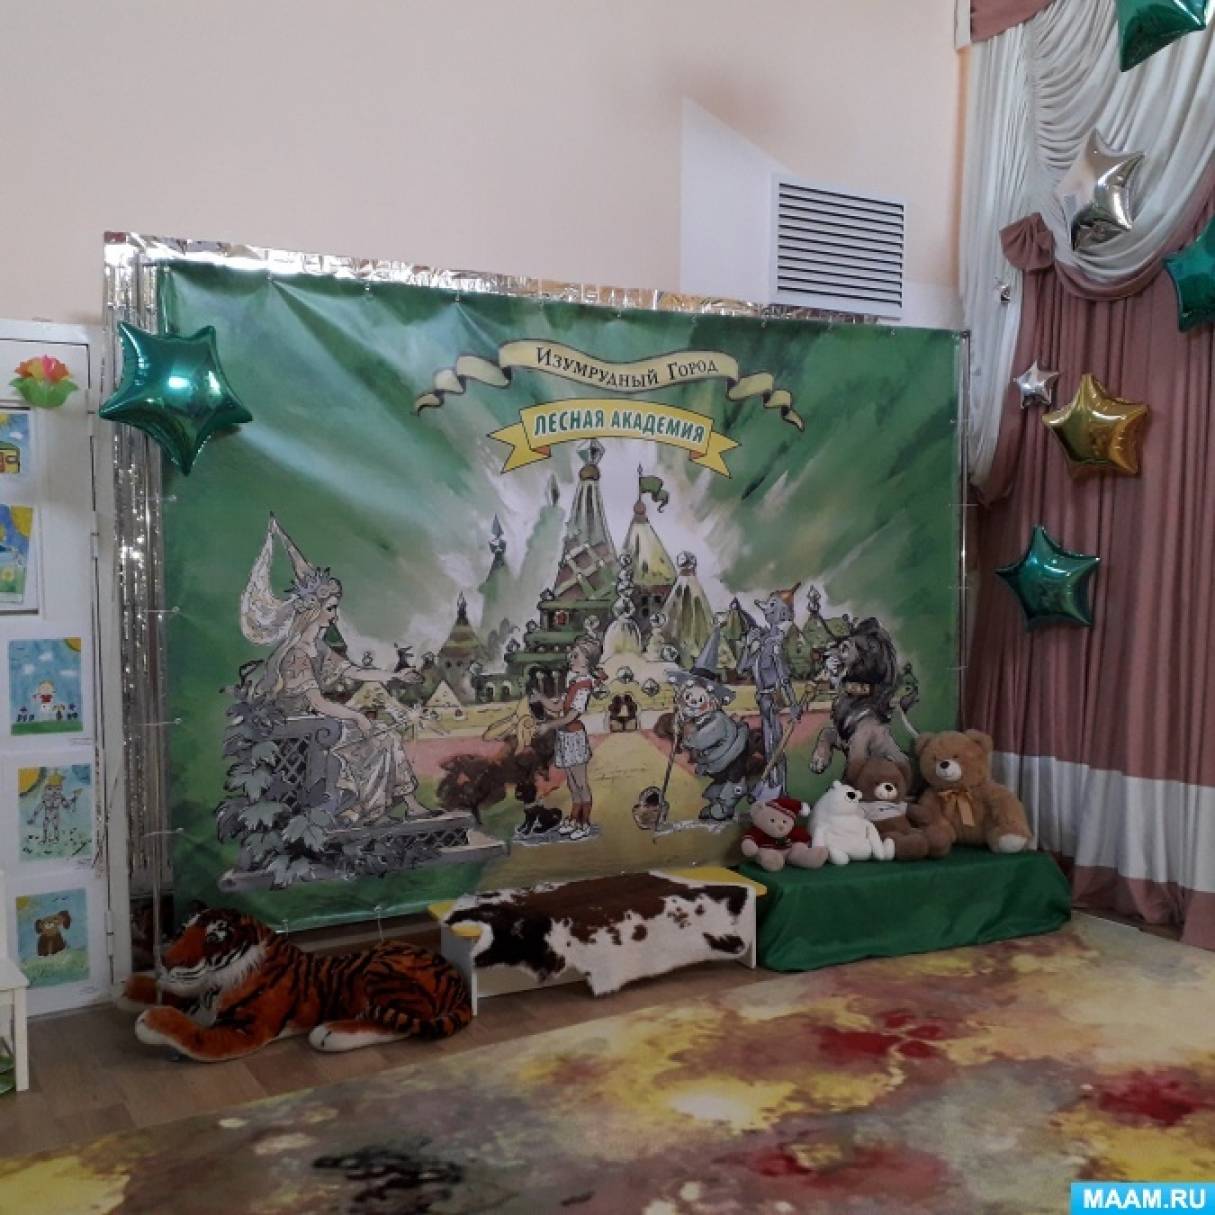 Международный день «Спасибо» отметили в детском саду «Шолпан» Ногайского района - Голос Степи